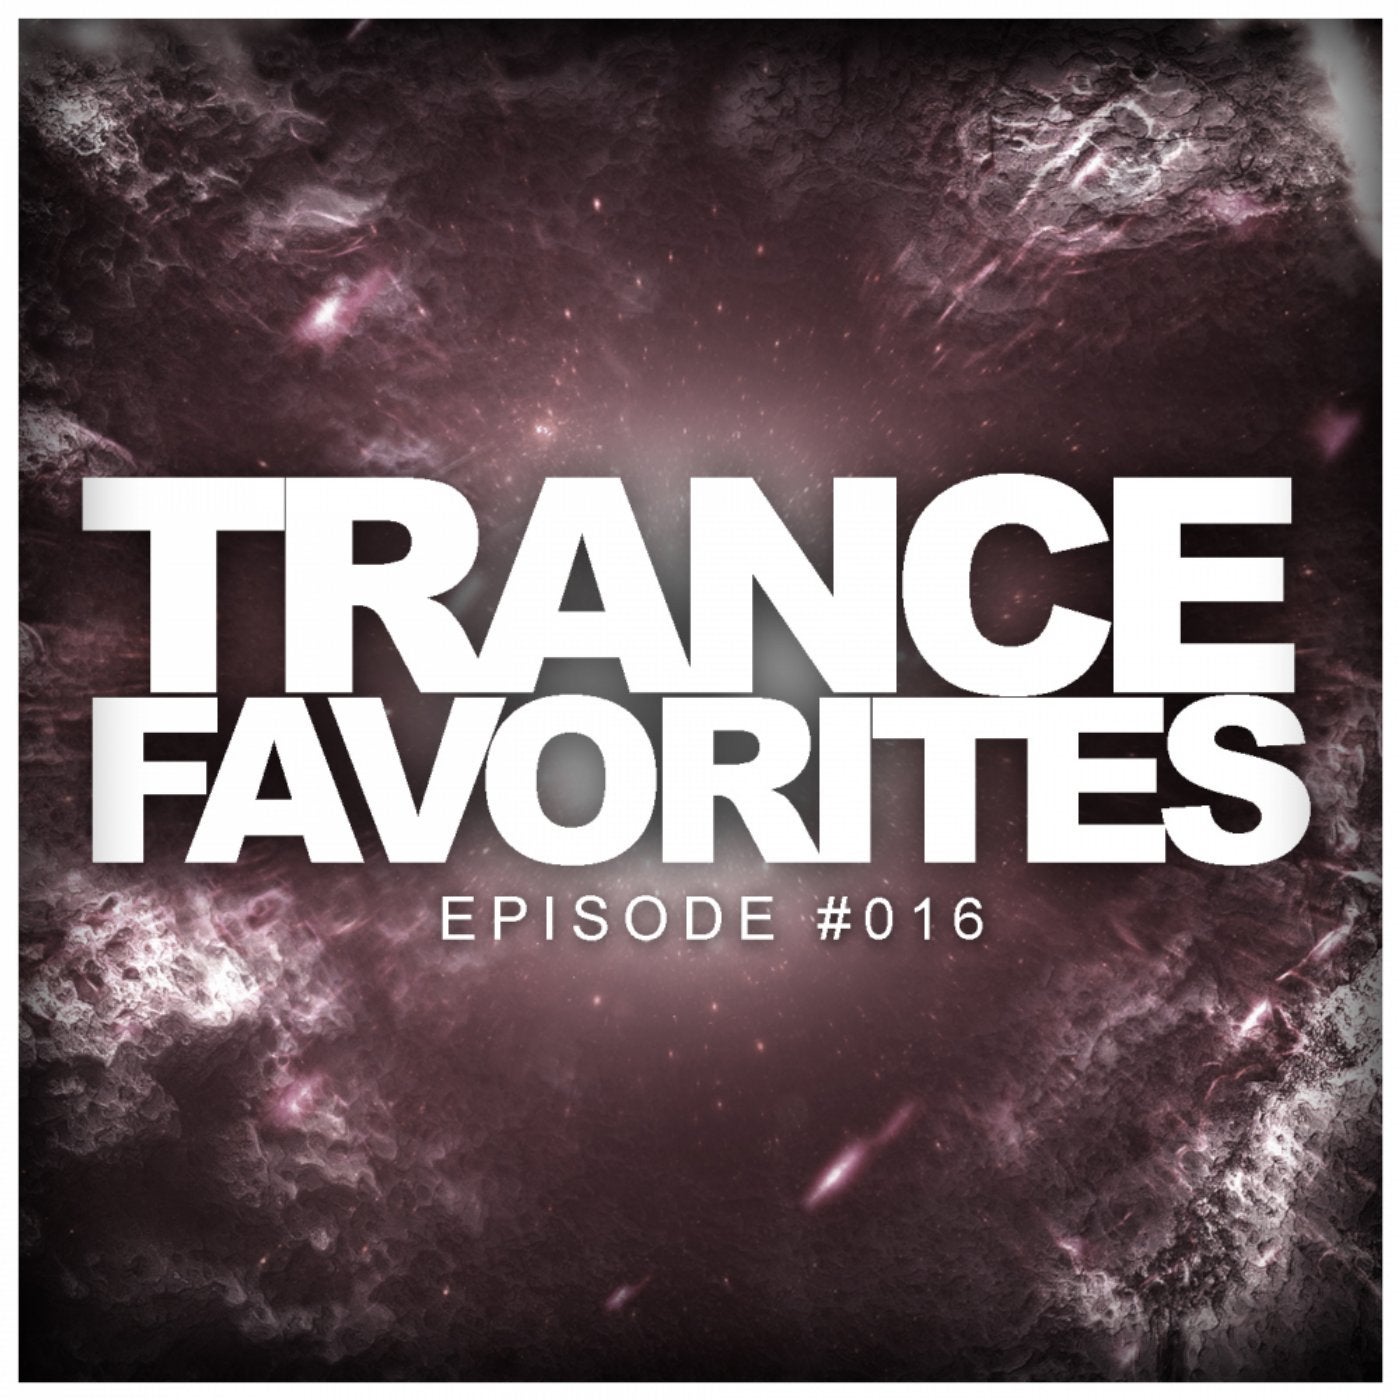 Trance Favorites: Episode #016